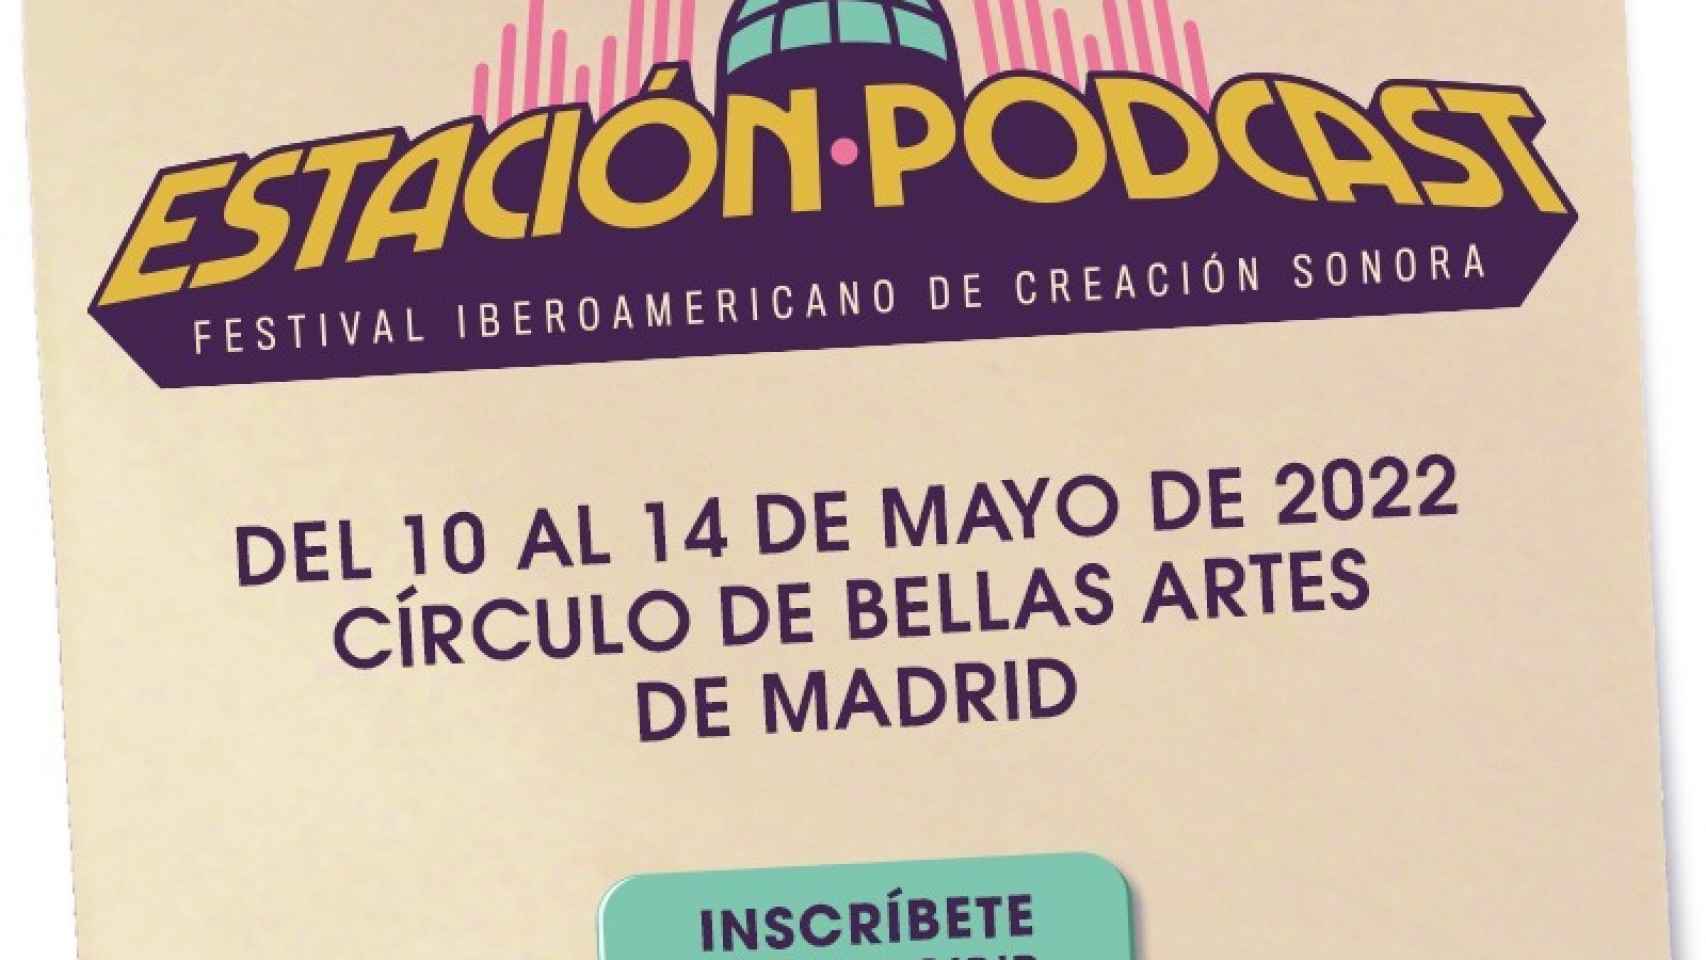 Del 10 al 14 de mayo en Madrid.